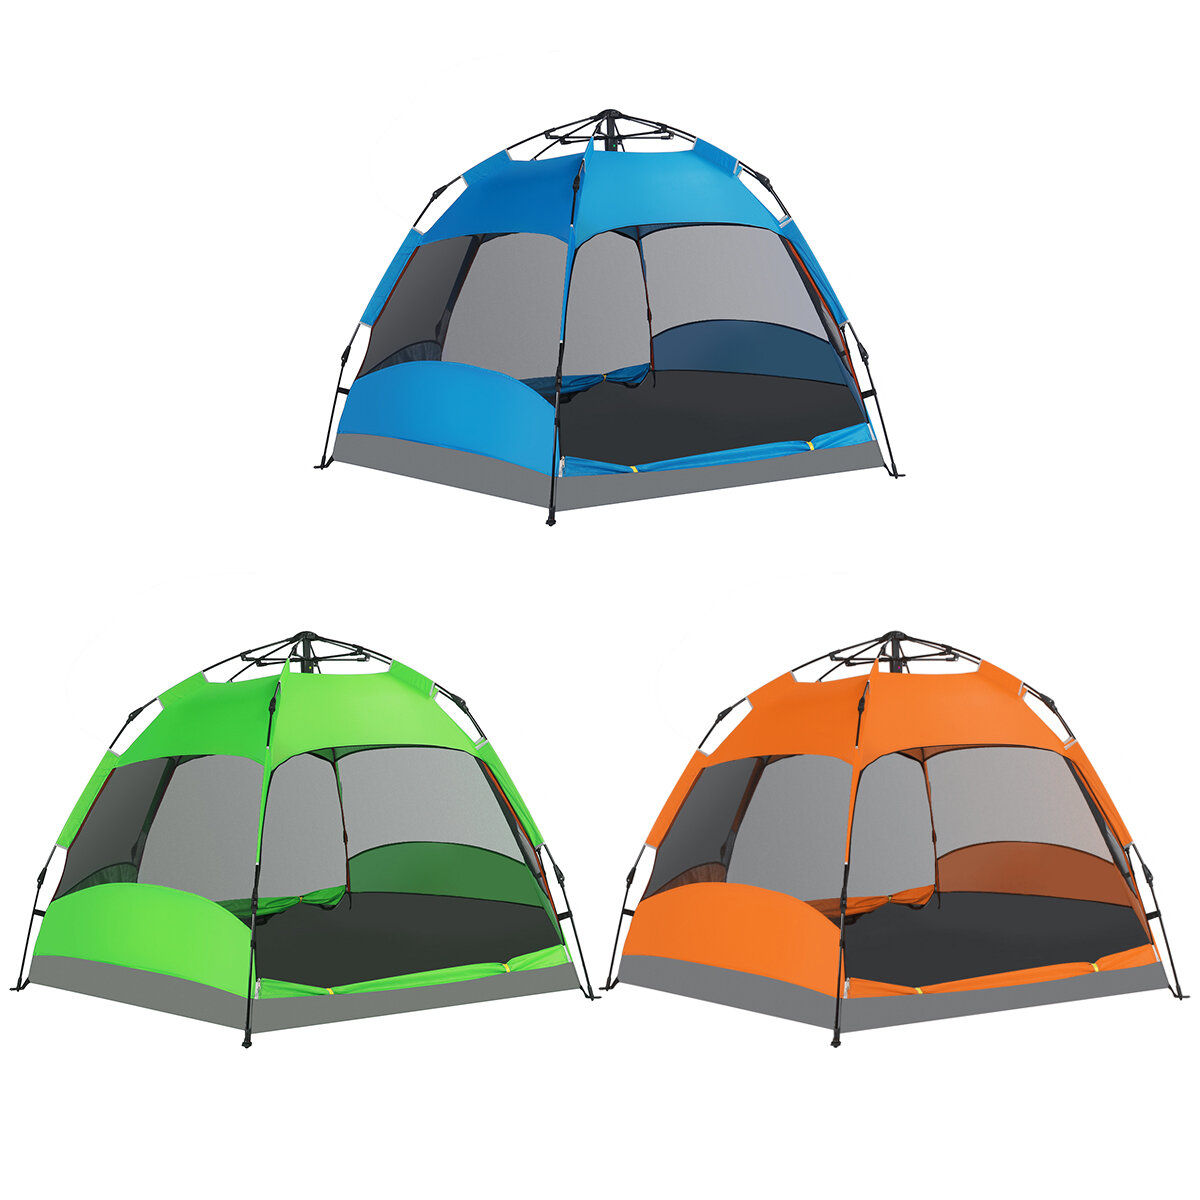 Przenośny namiot kempingowy dla 5-8 osób, antysłoneczny, wodoodporny, dwuwarstwowy, w pełni automatyczny do kempingu na świeżym powietrzu.